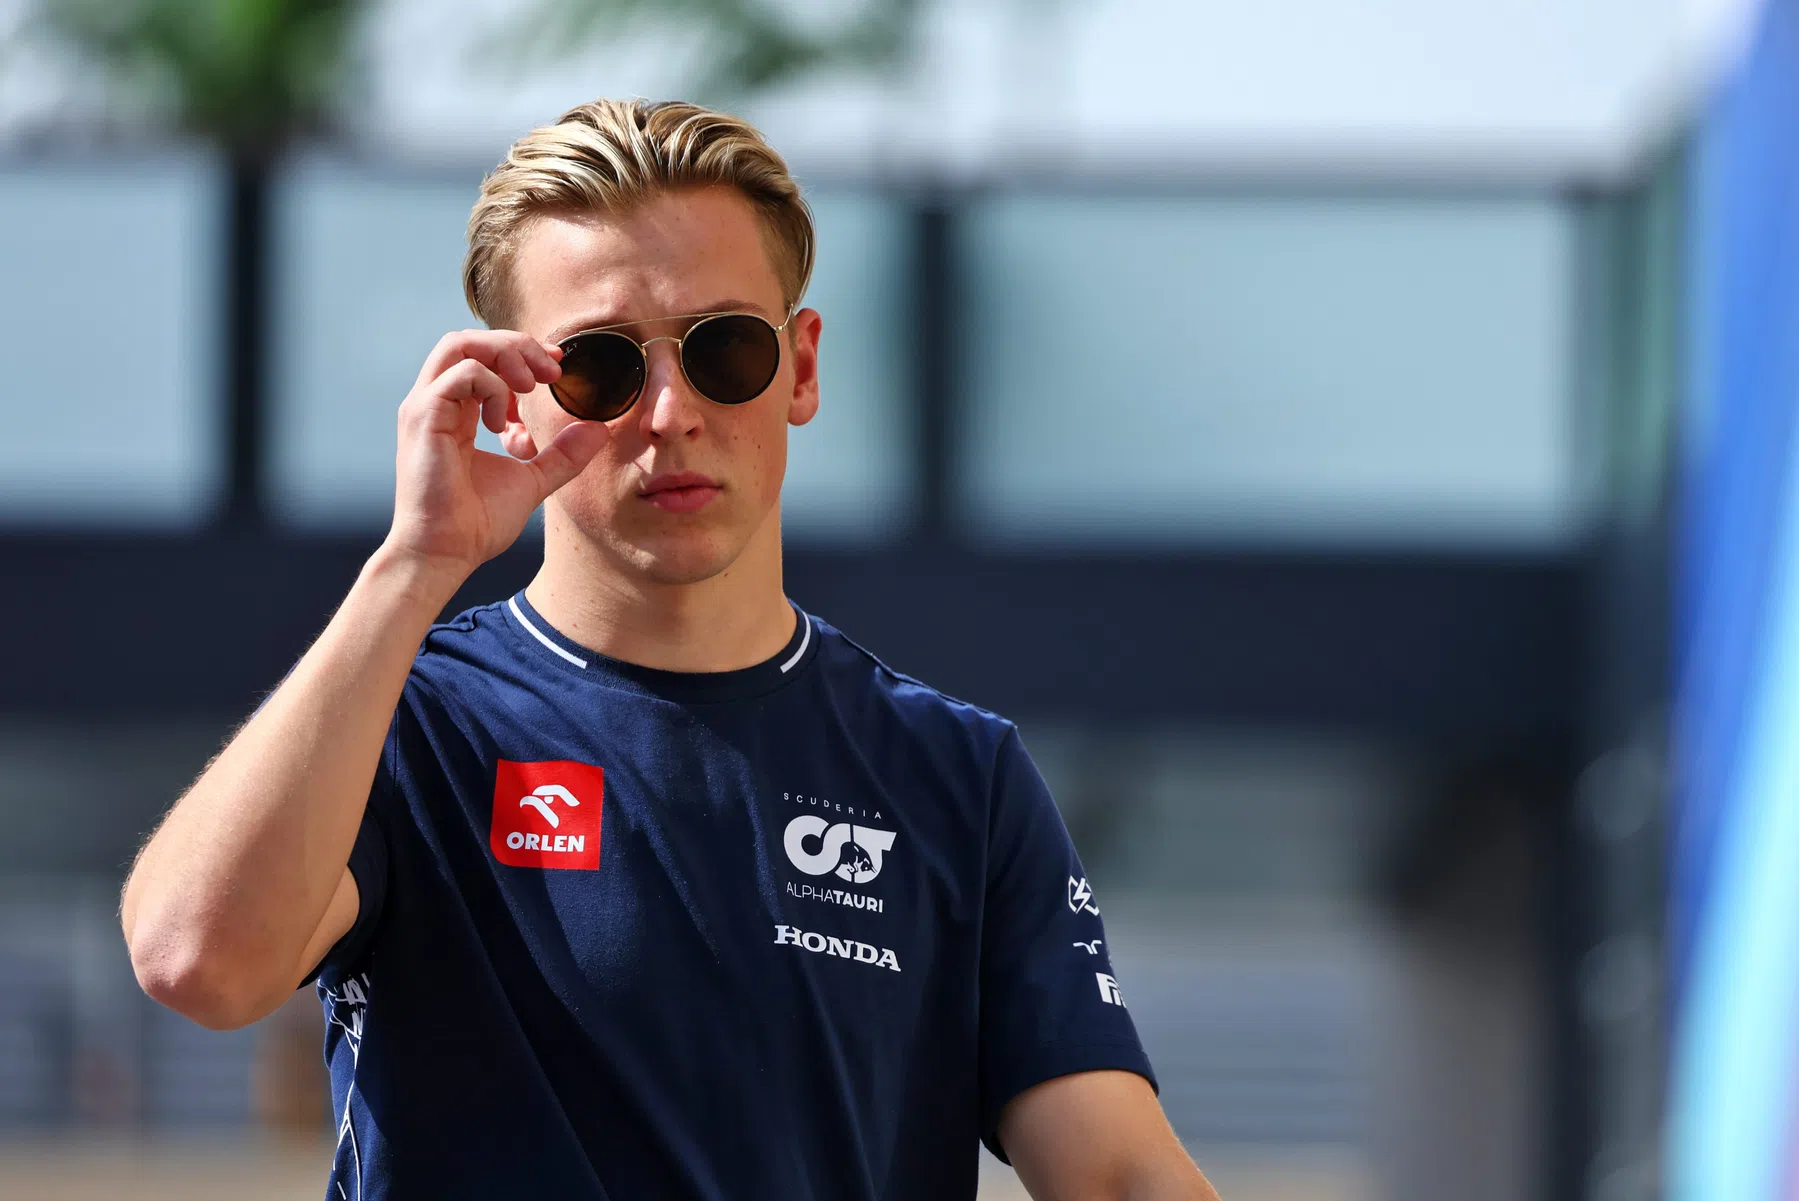 Marko promete que Lawson conseguirá uma vaga na Fórmula 1 em 2025